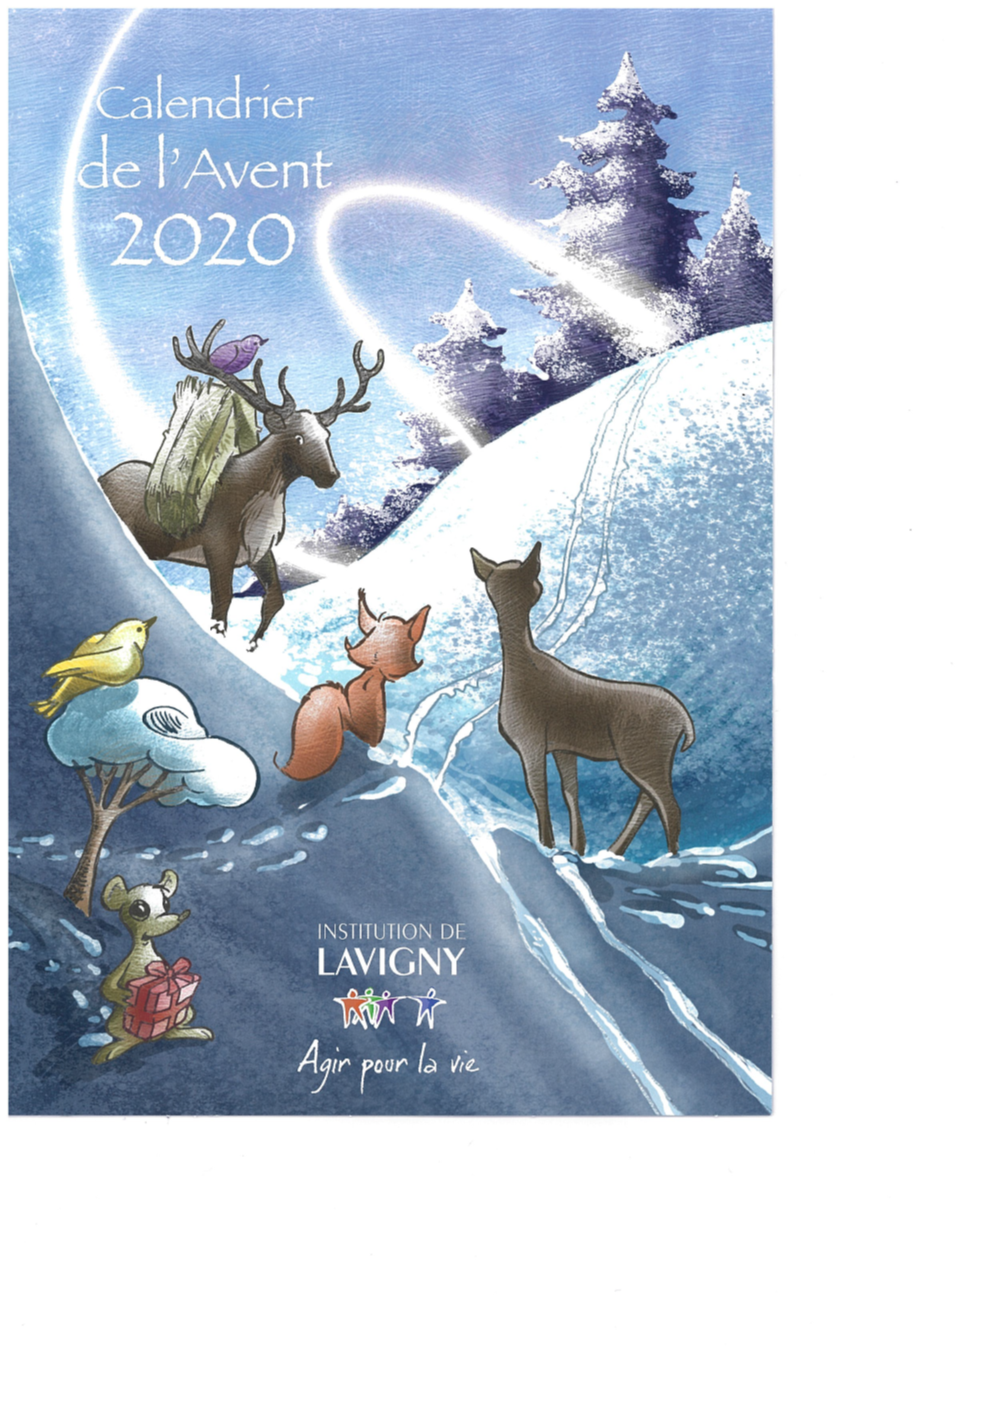 Yves Schaefer, illustrateur établi à Berolle, a réalisé le calendrier de l'Avent 2020.